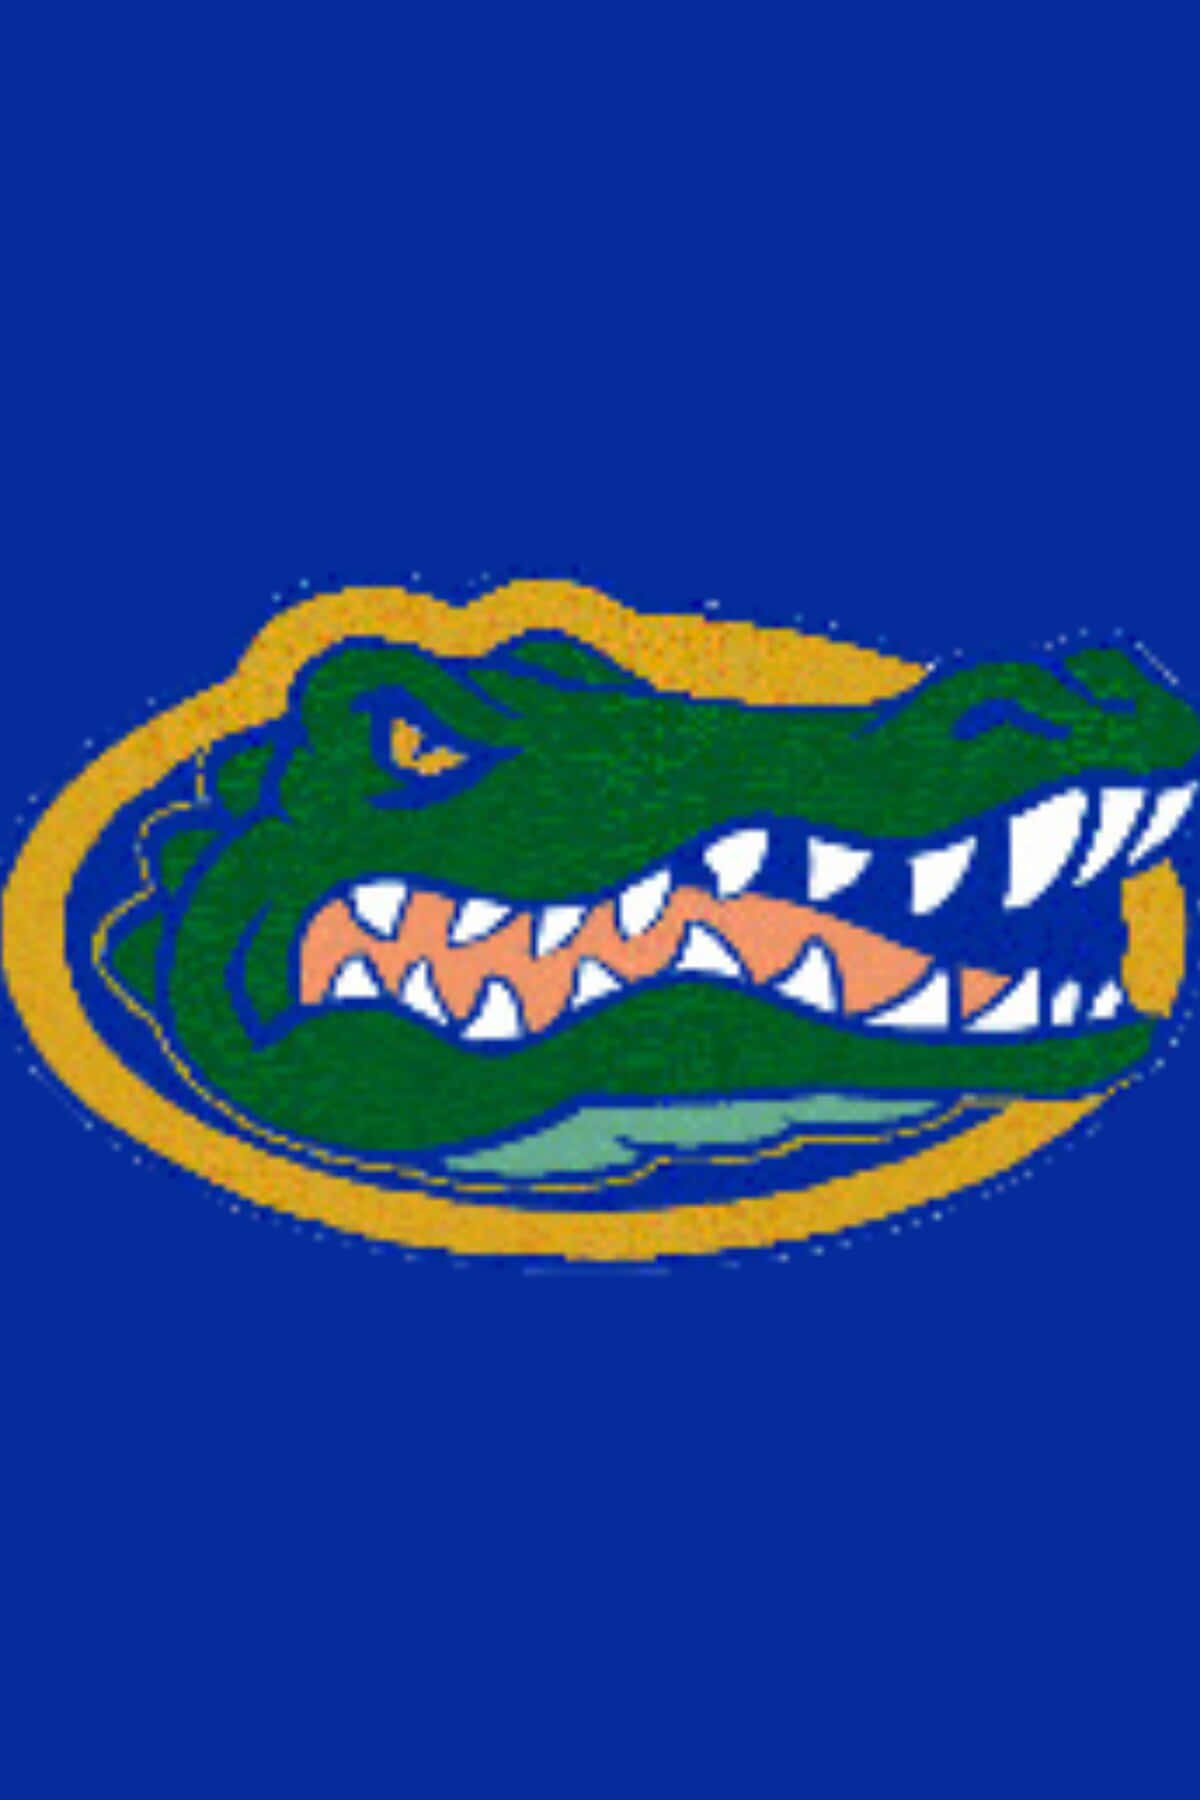 Florida Gators Logo Wallpaper